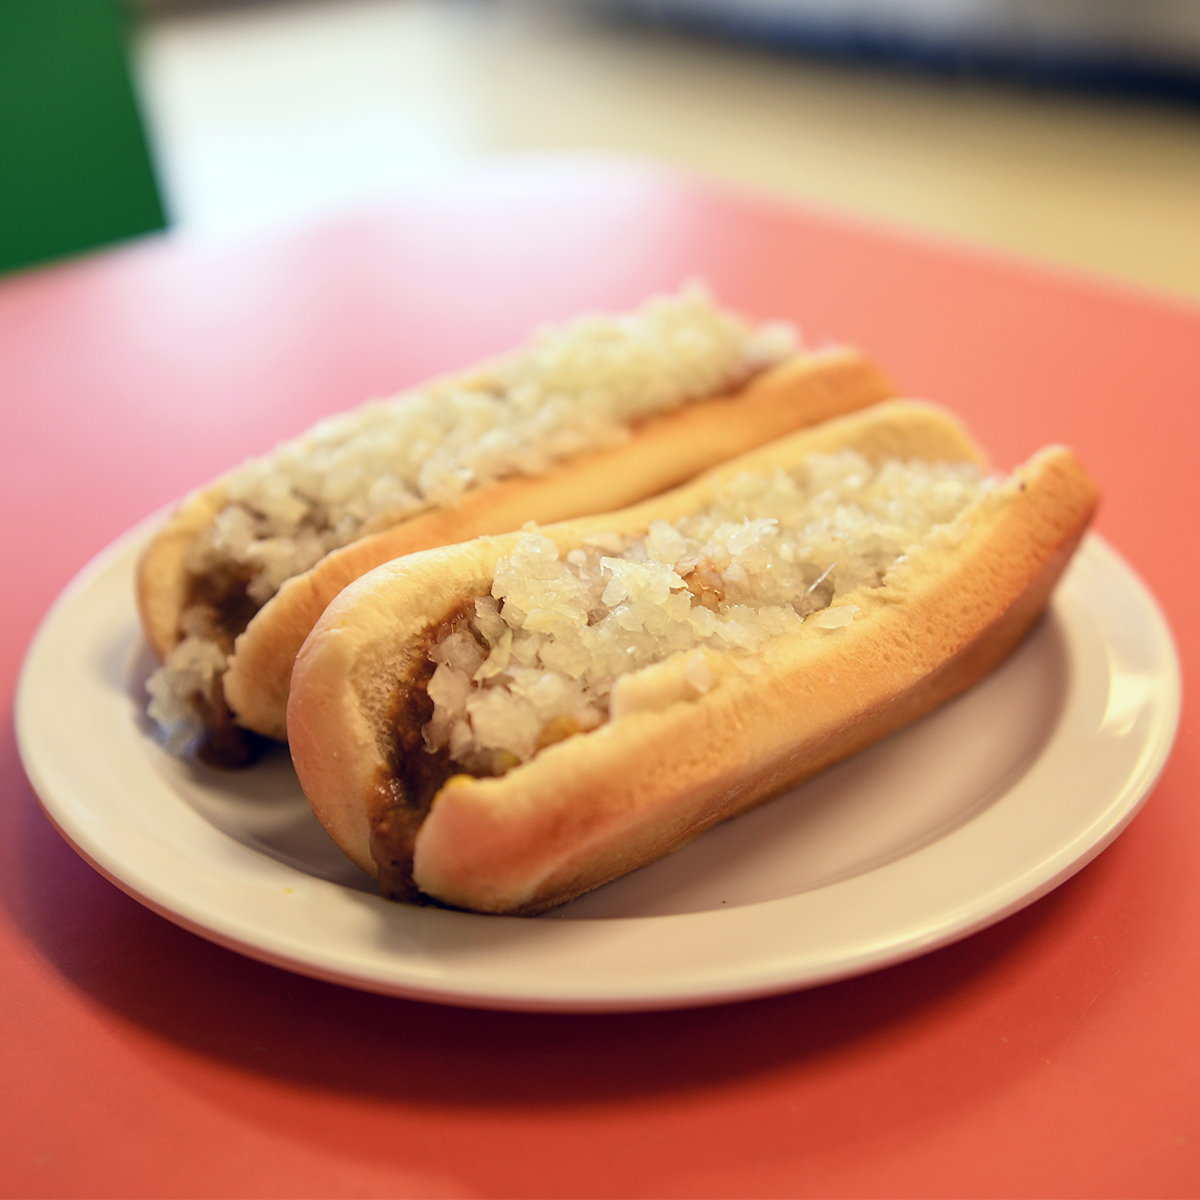 Original Coney Island Hot Dog